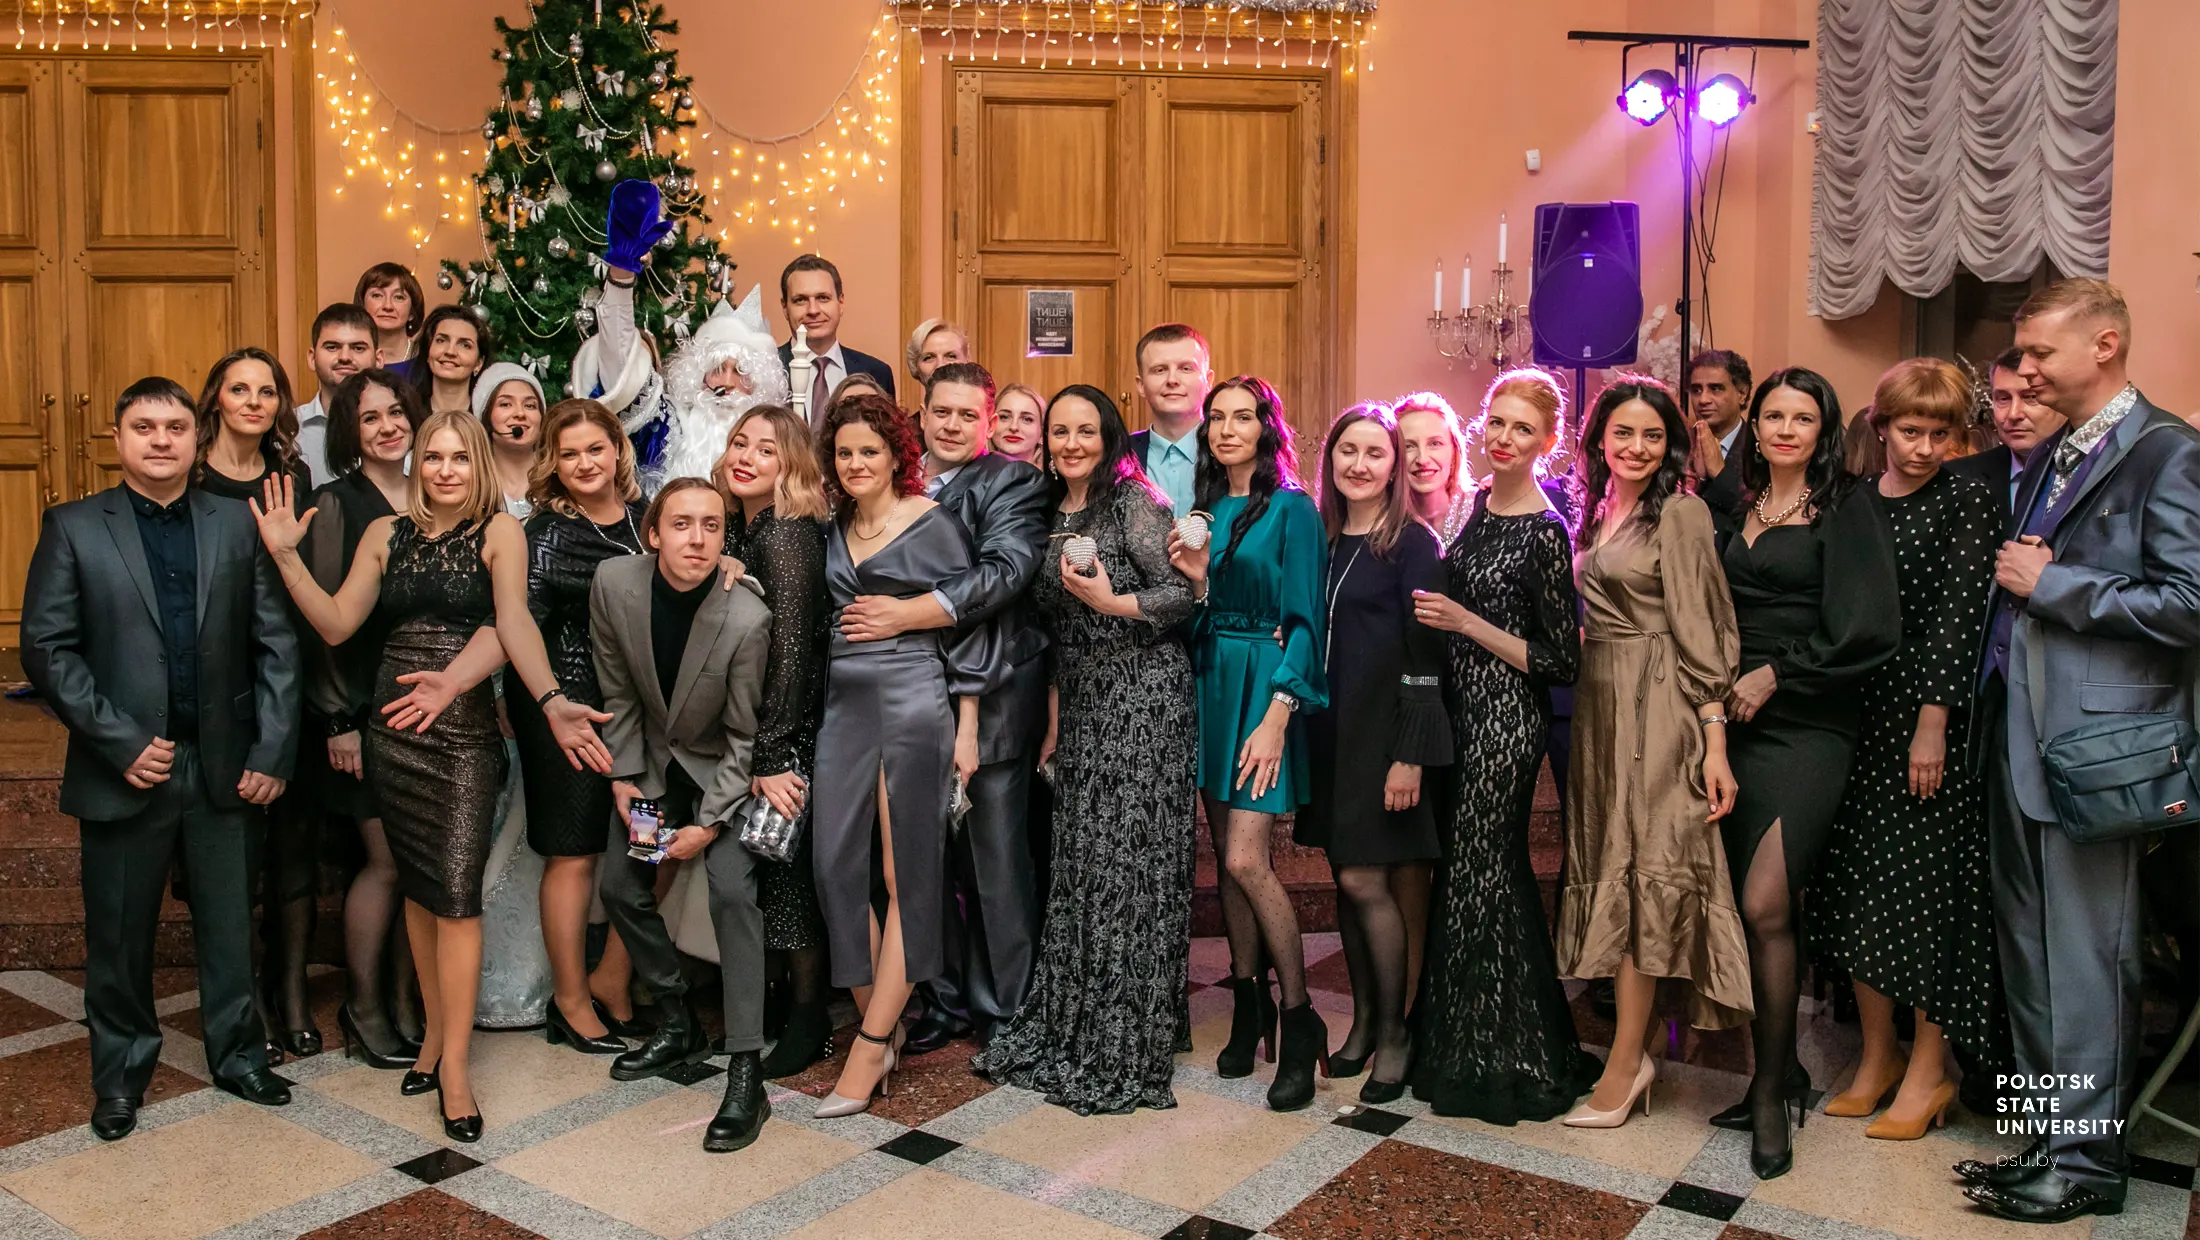 Участники новогоднего серебряного бала в Полоцком коллегиуме